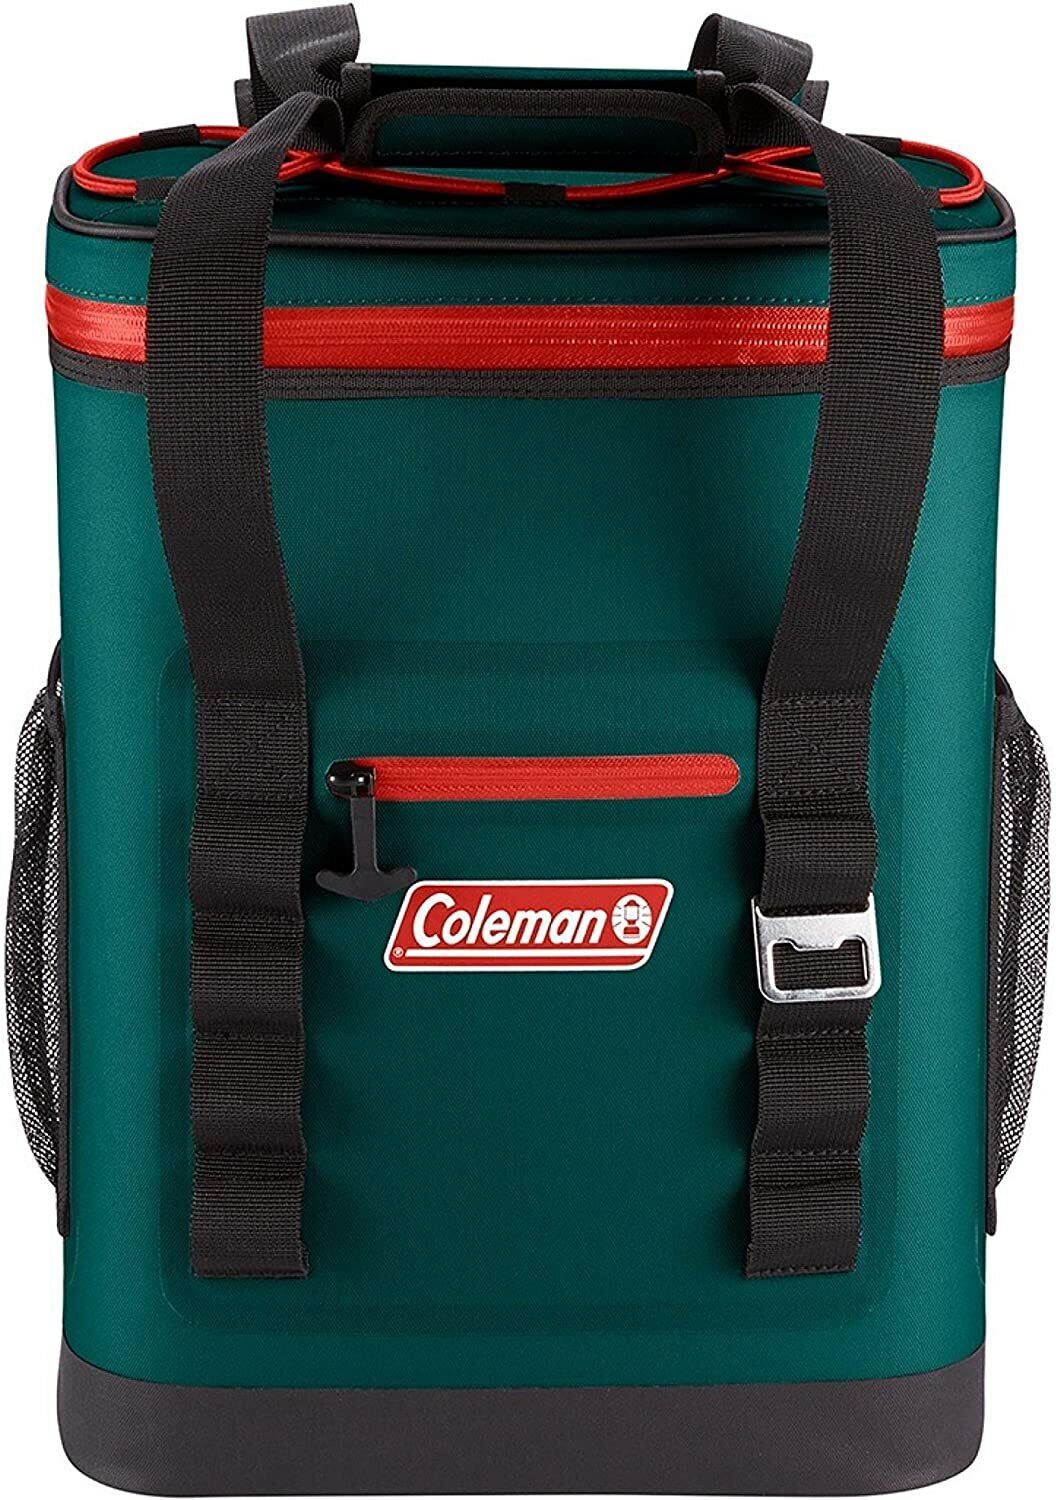 Coleman Soft Cooler Bag High-Performance Leak-Proof Soft Cooler